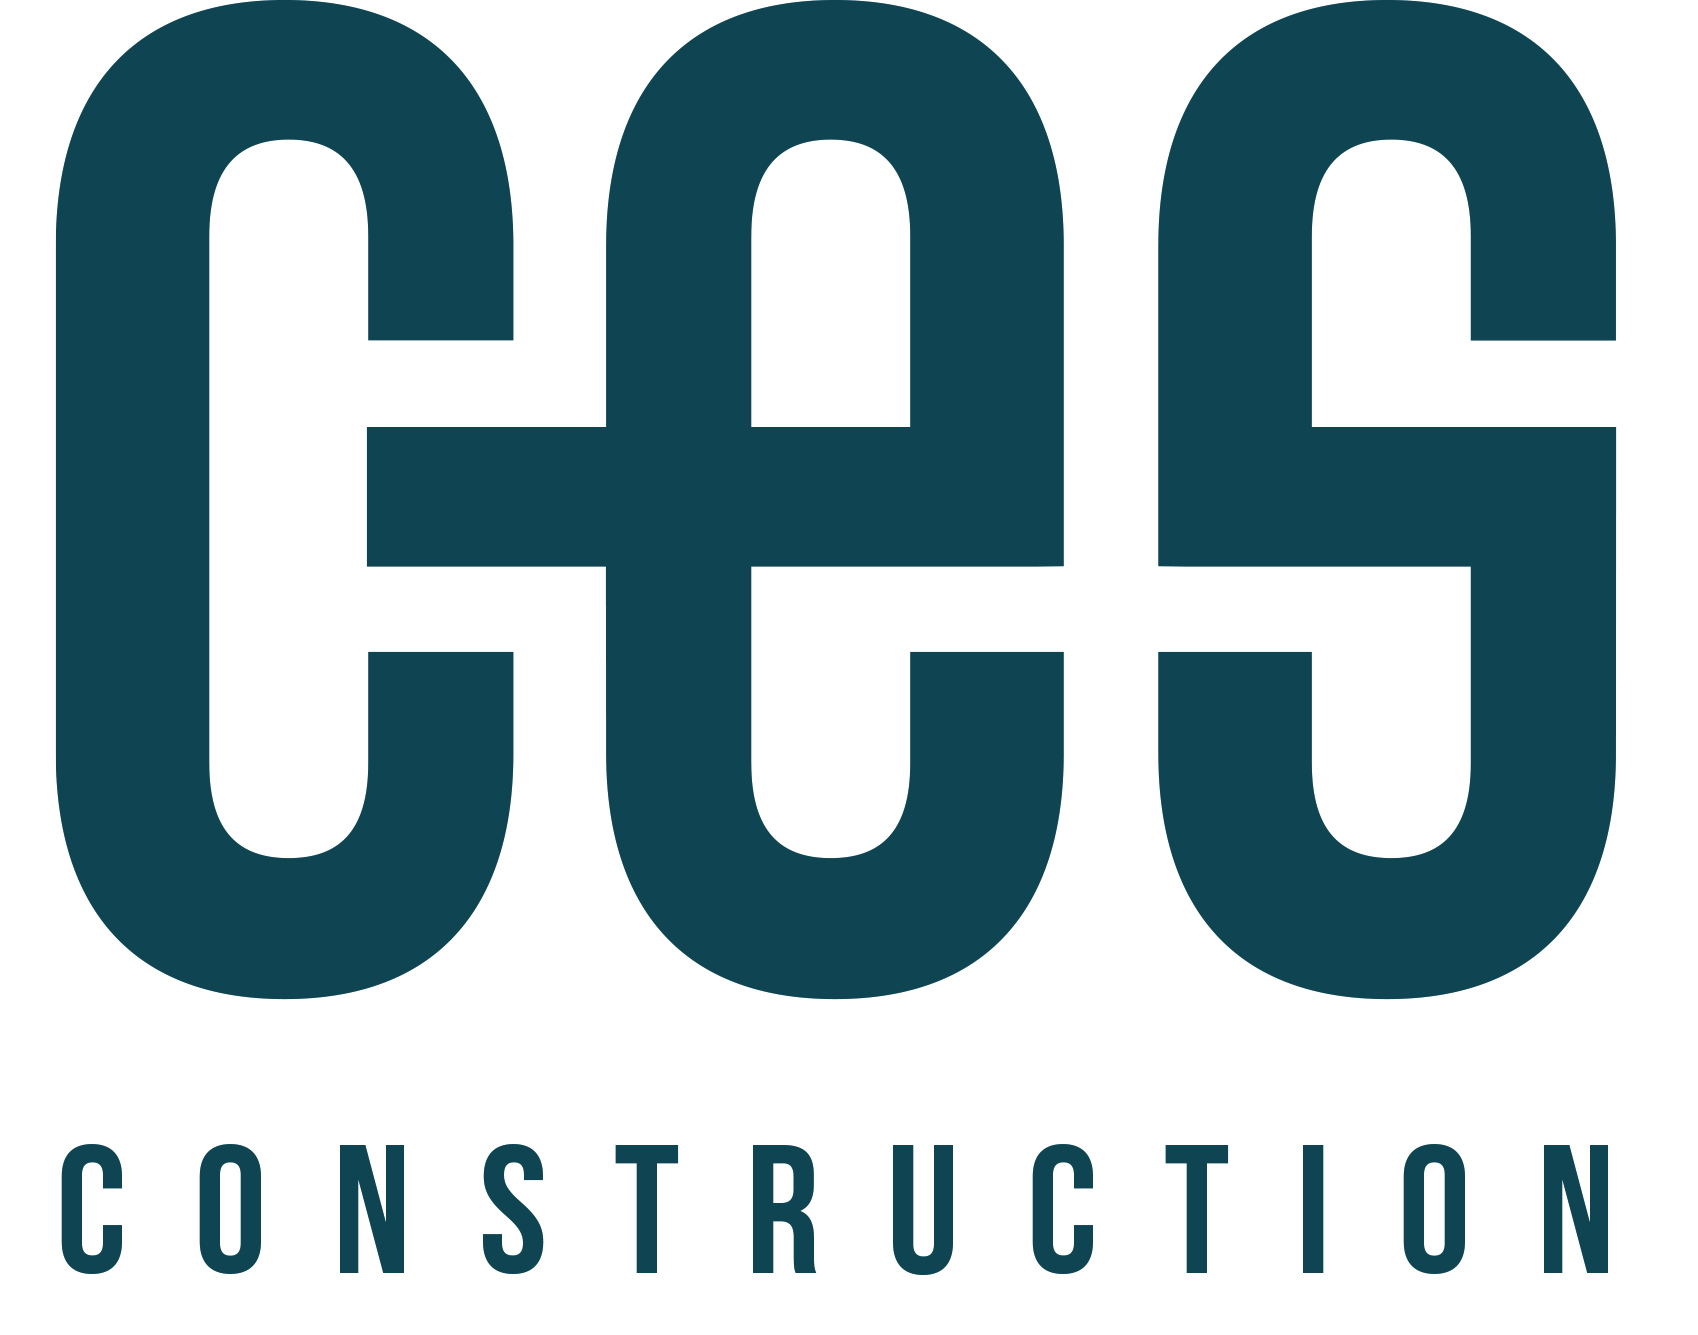 CES Construction